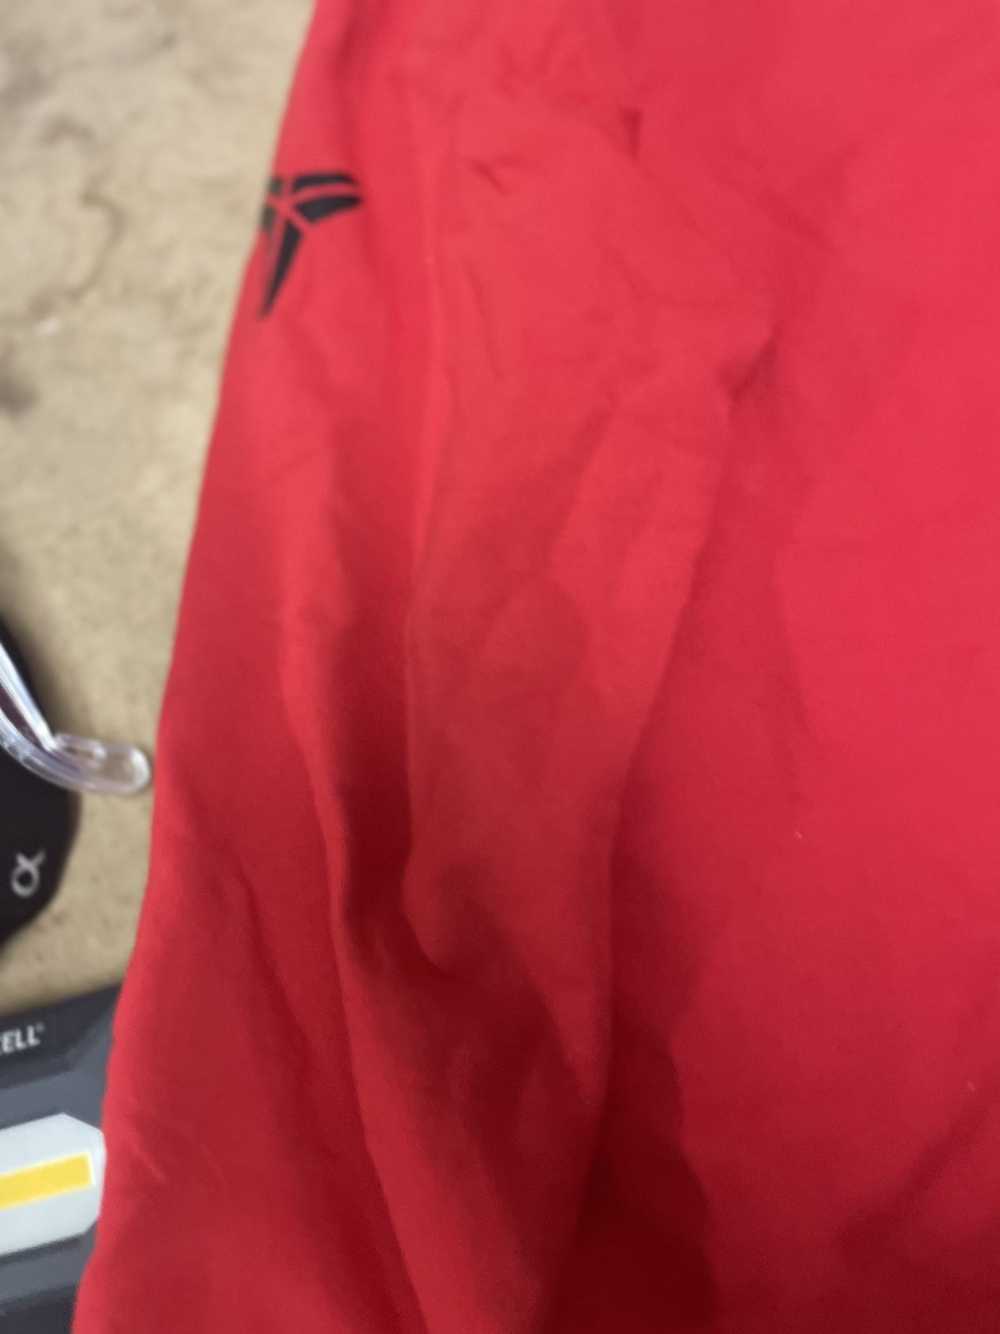 Hudson Outerwear Hudson sweatshirt red Size Large… - image 9